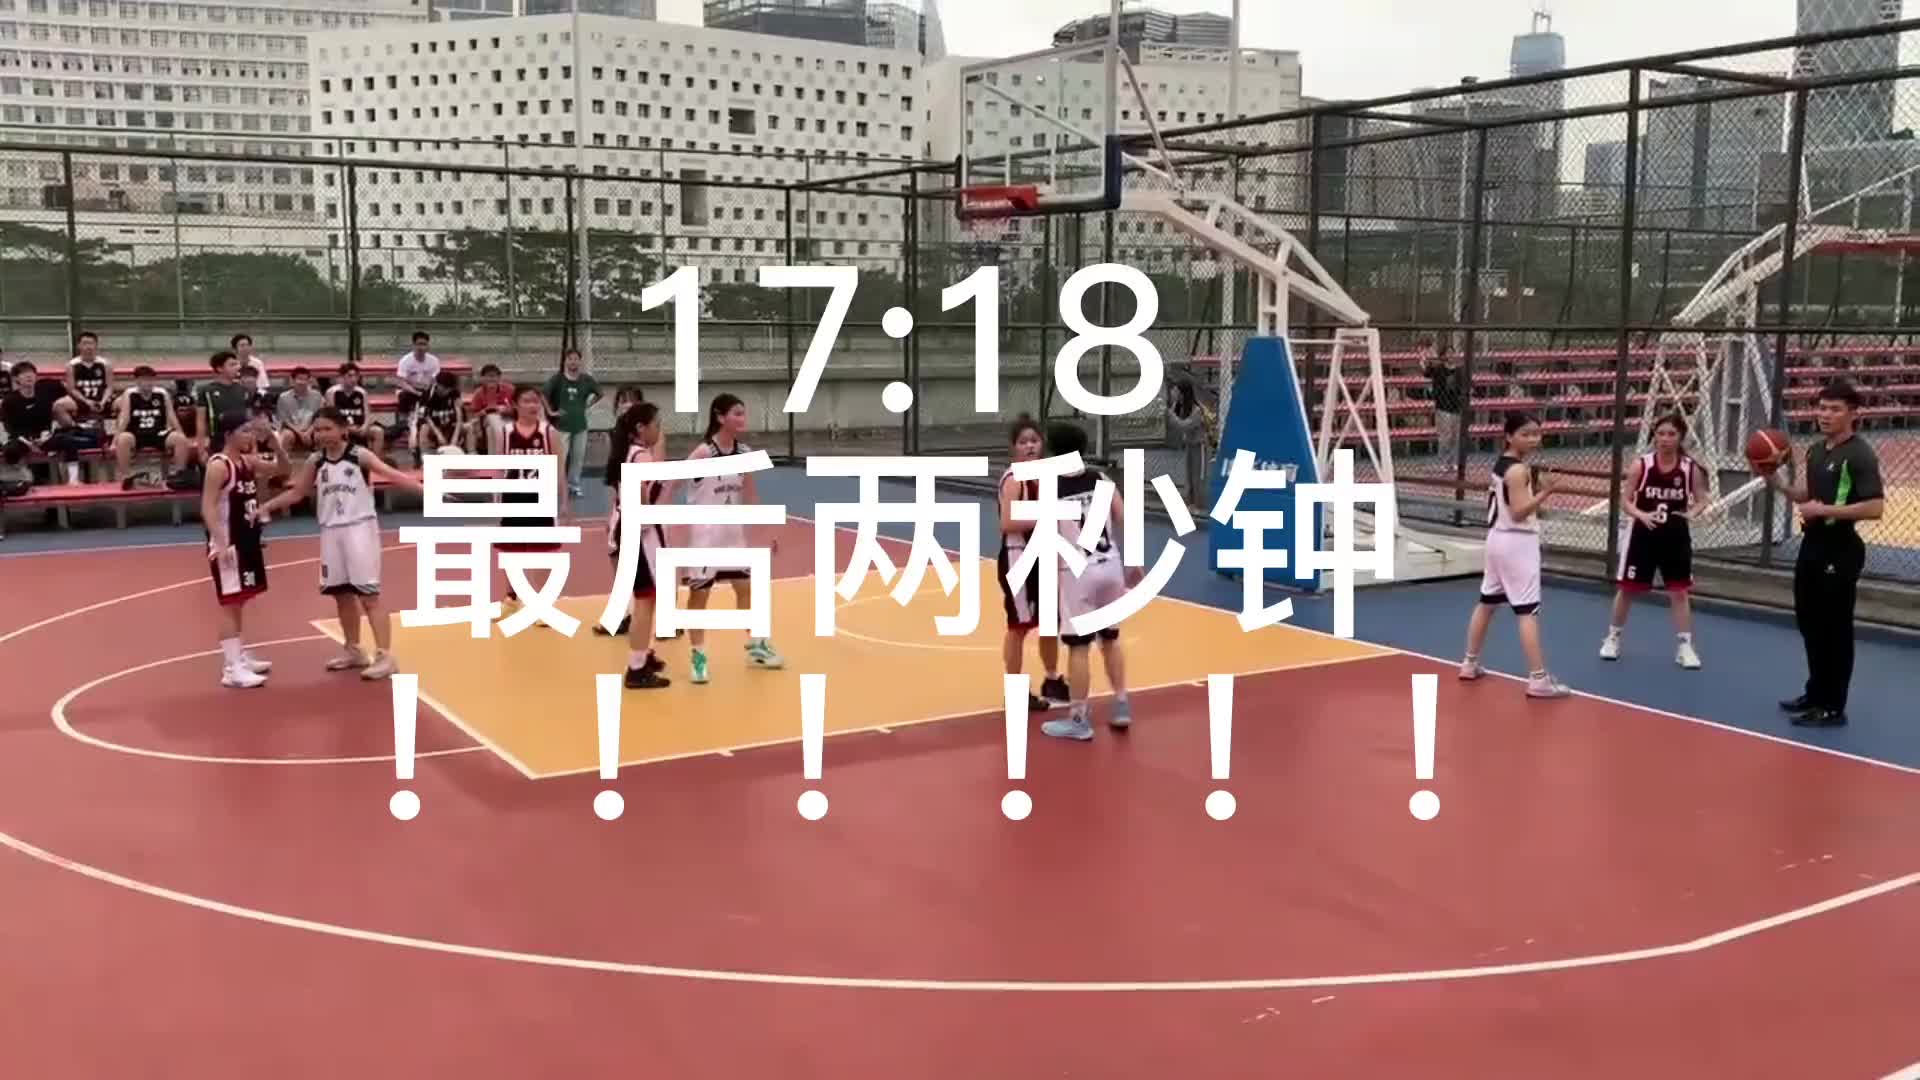 深圳大学女生篮球赛最后17:18 小姐姐飚压哨超远三分绝杀！